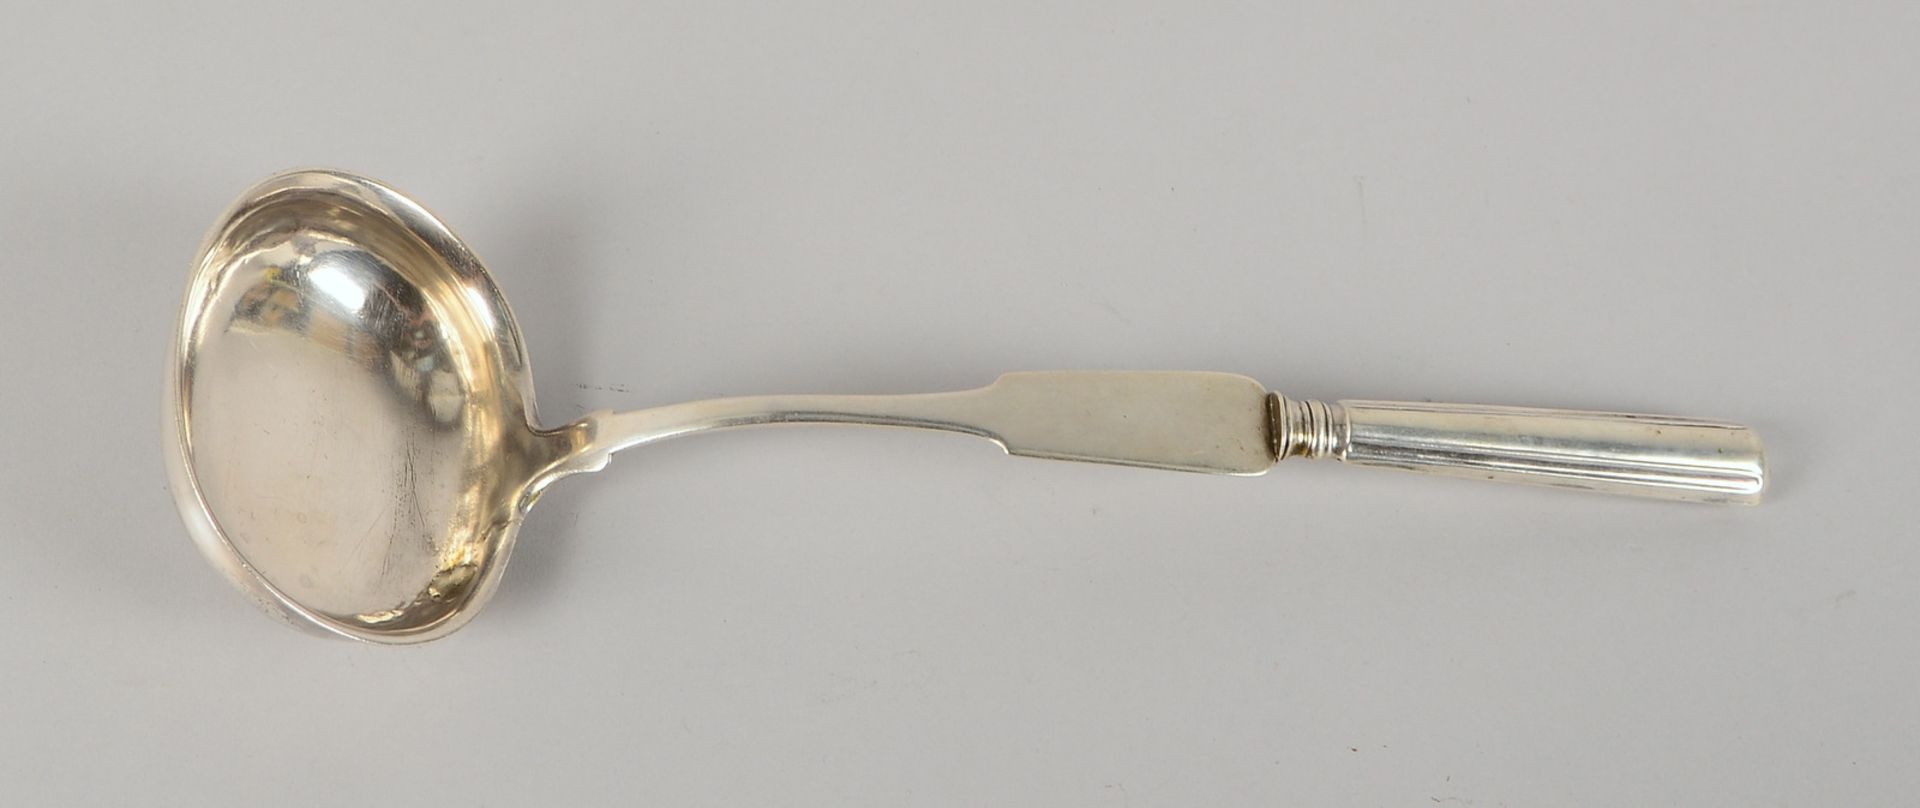 Schöpfkelle (Brenneger/Bremen, punz. 'Bremer Schlüssel'), Silber; Gew. 152 g